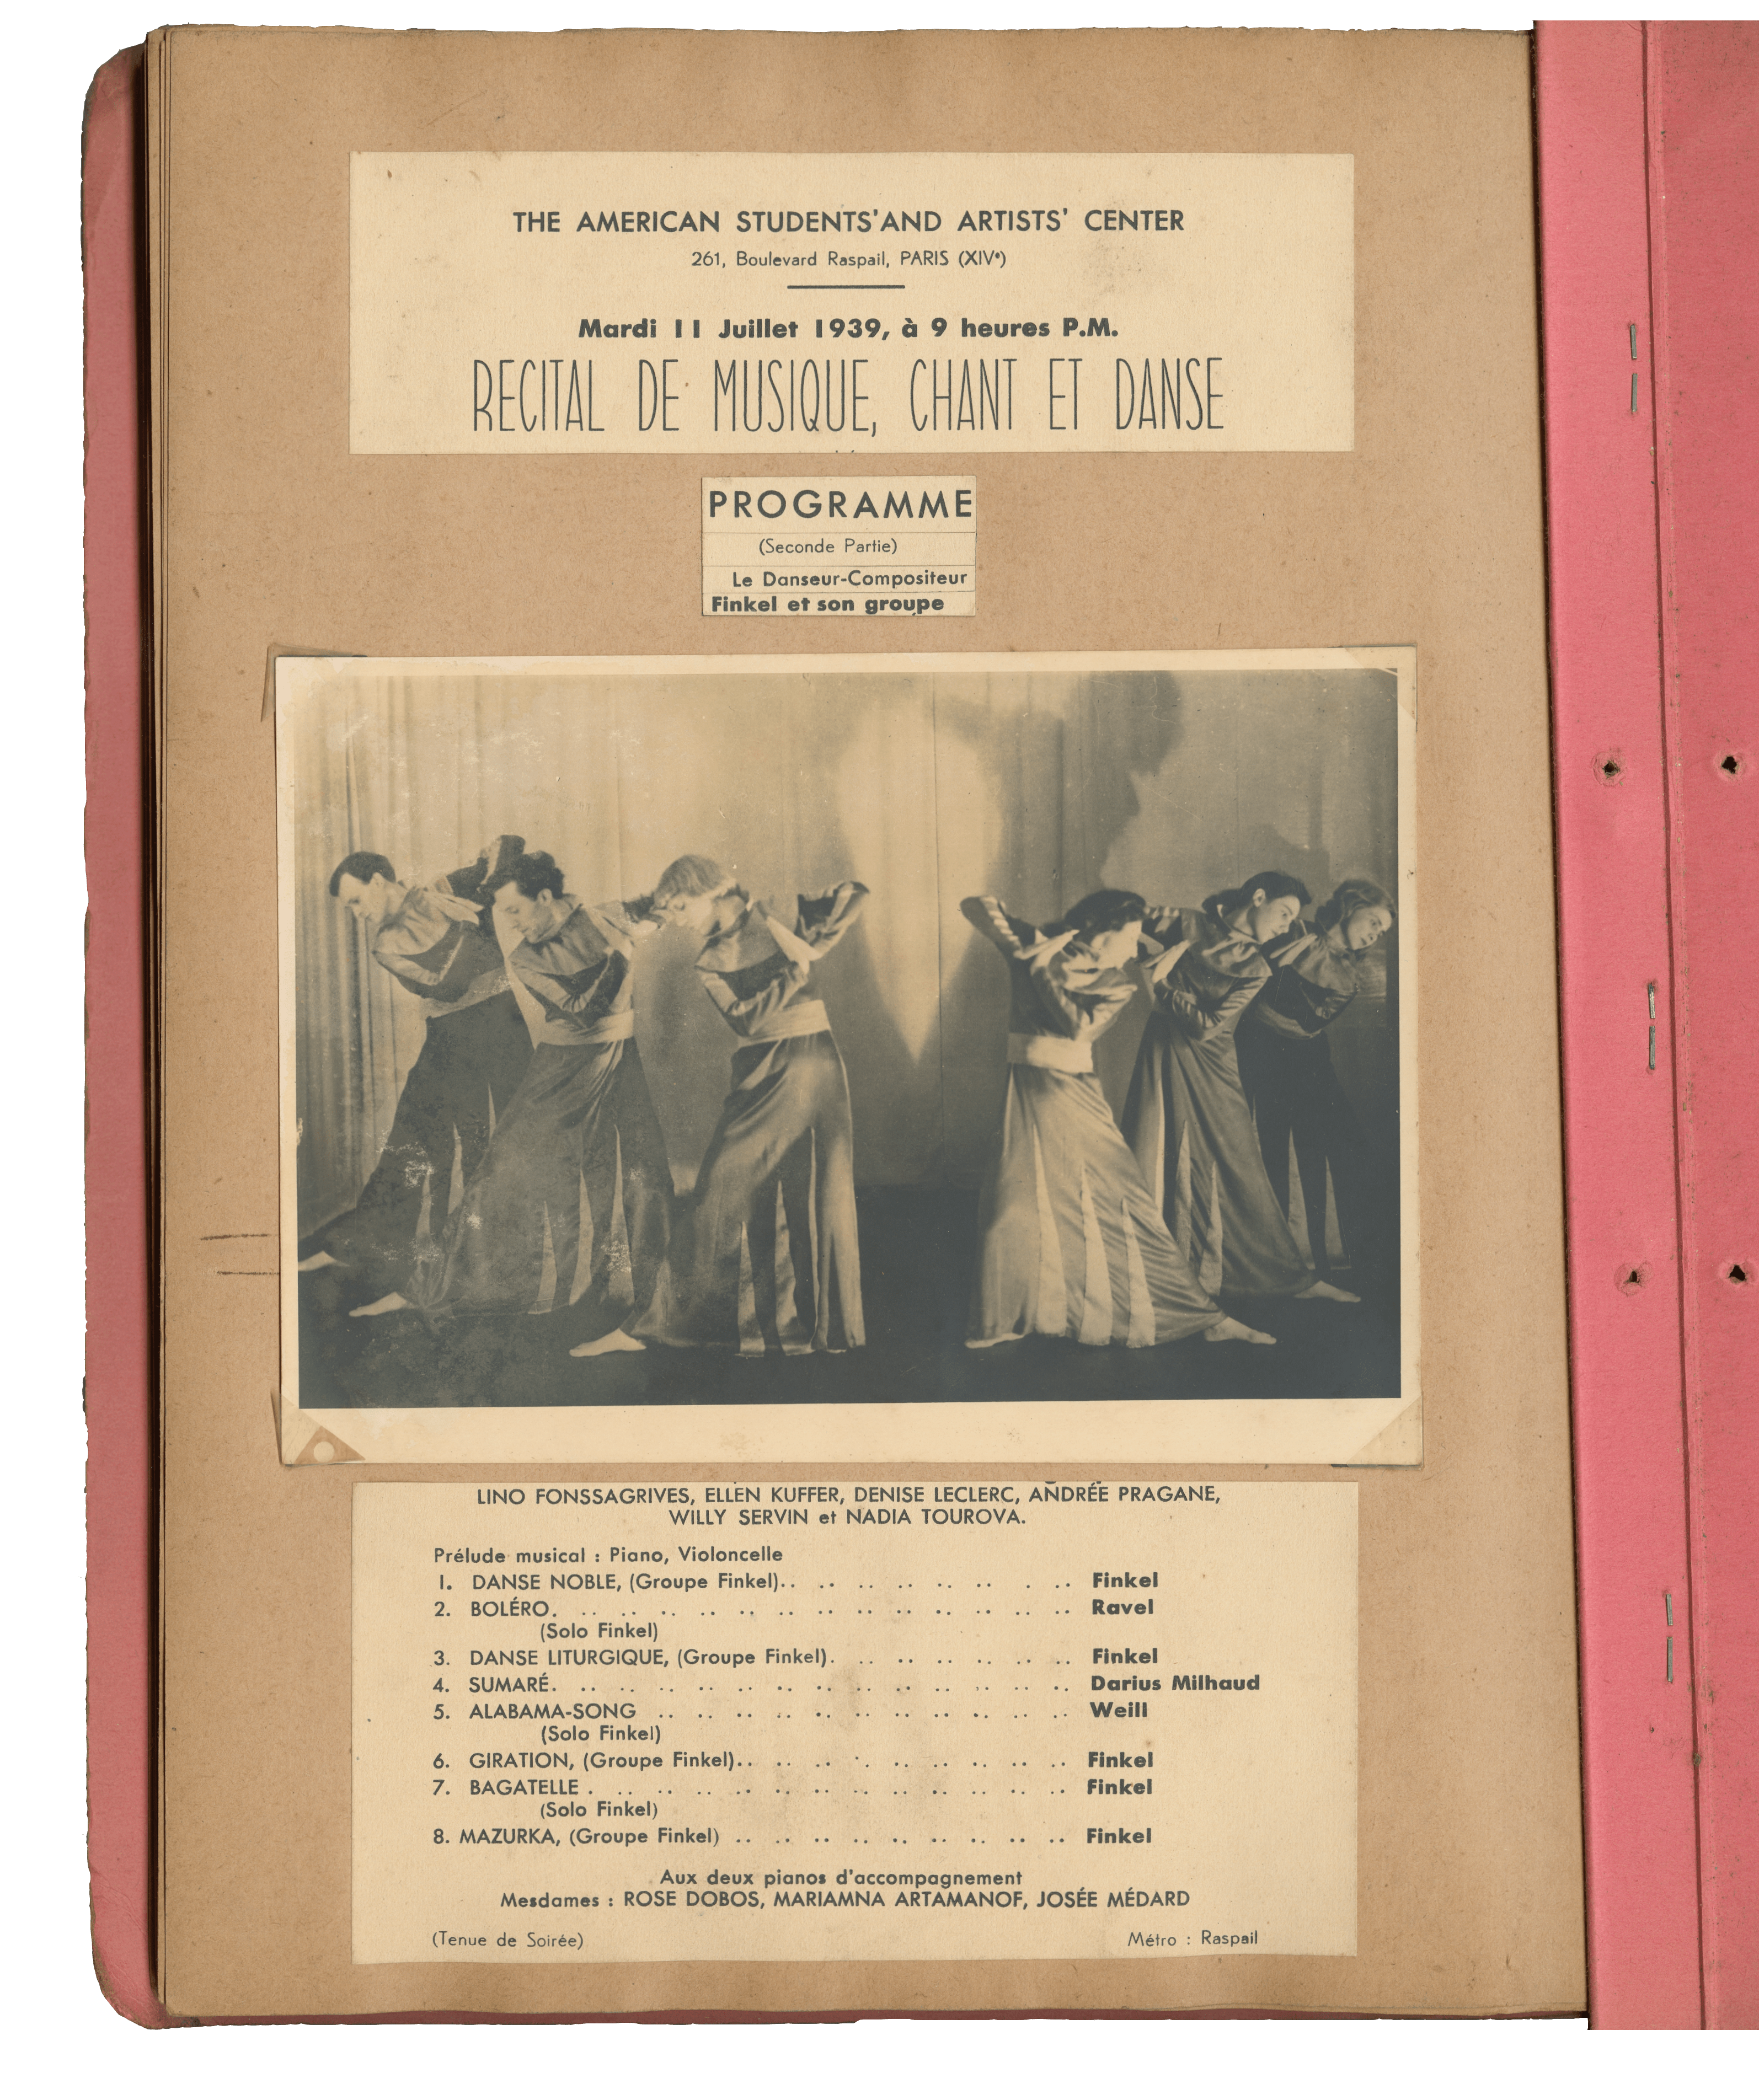 选自Andrée Pragane的相册，纪念Finkel Group，1939年。